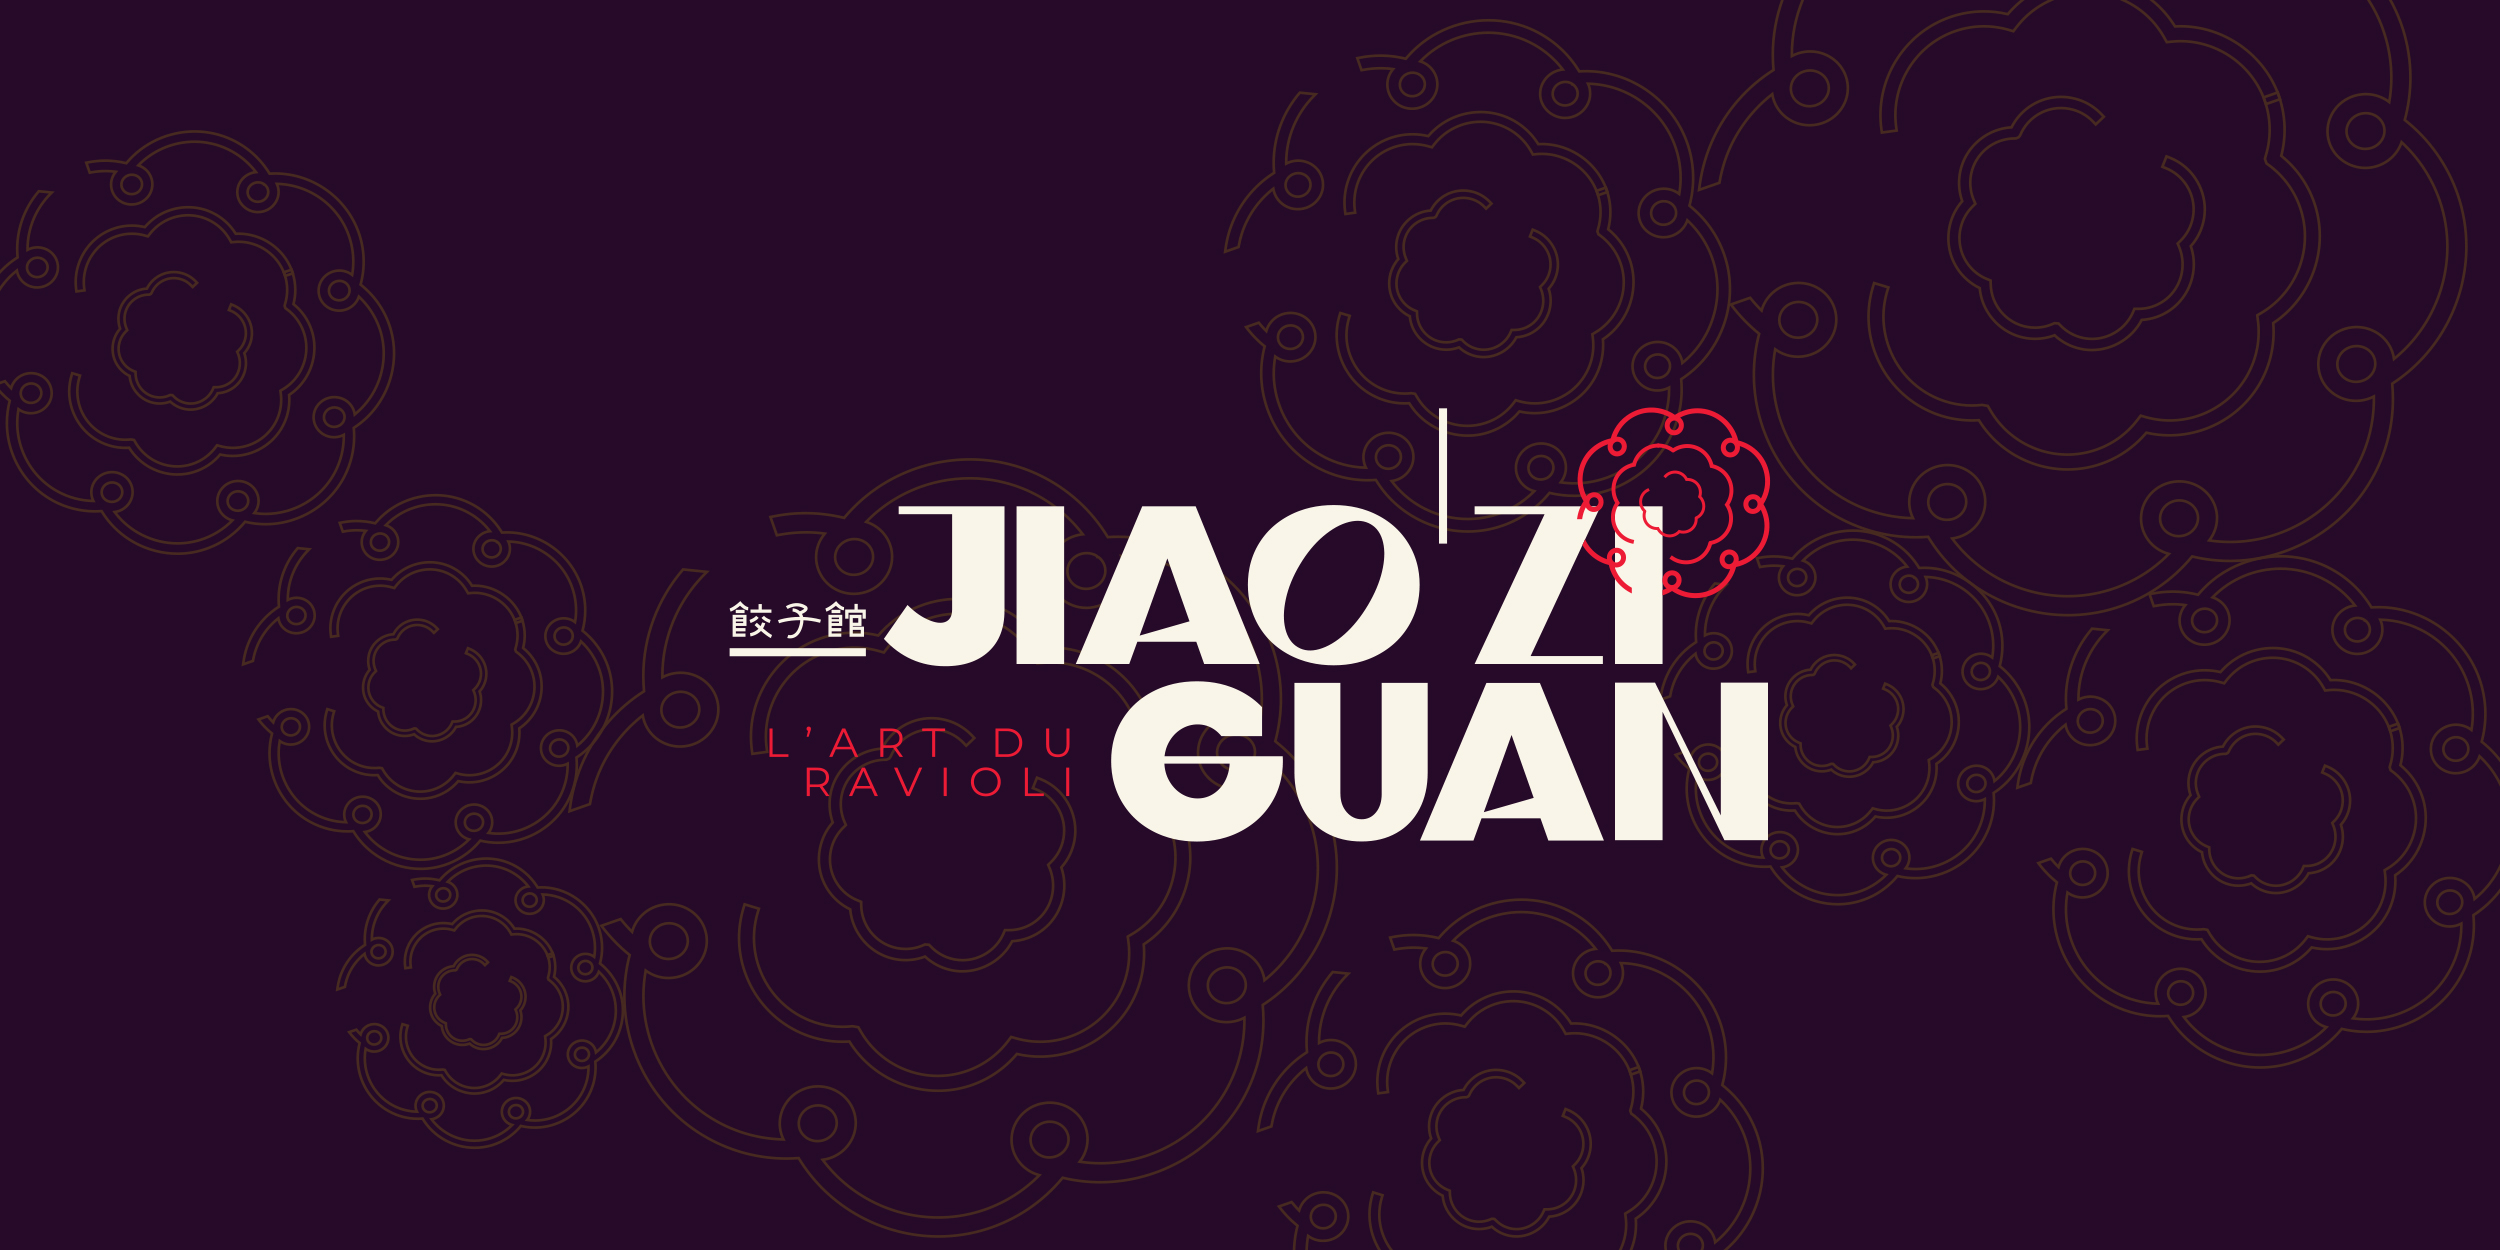 Conception logo restaurant Jiao Zi Guan